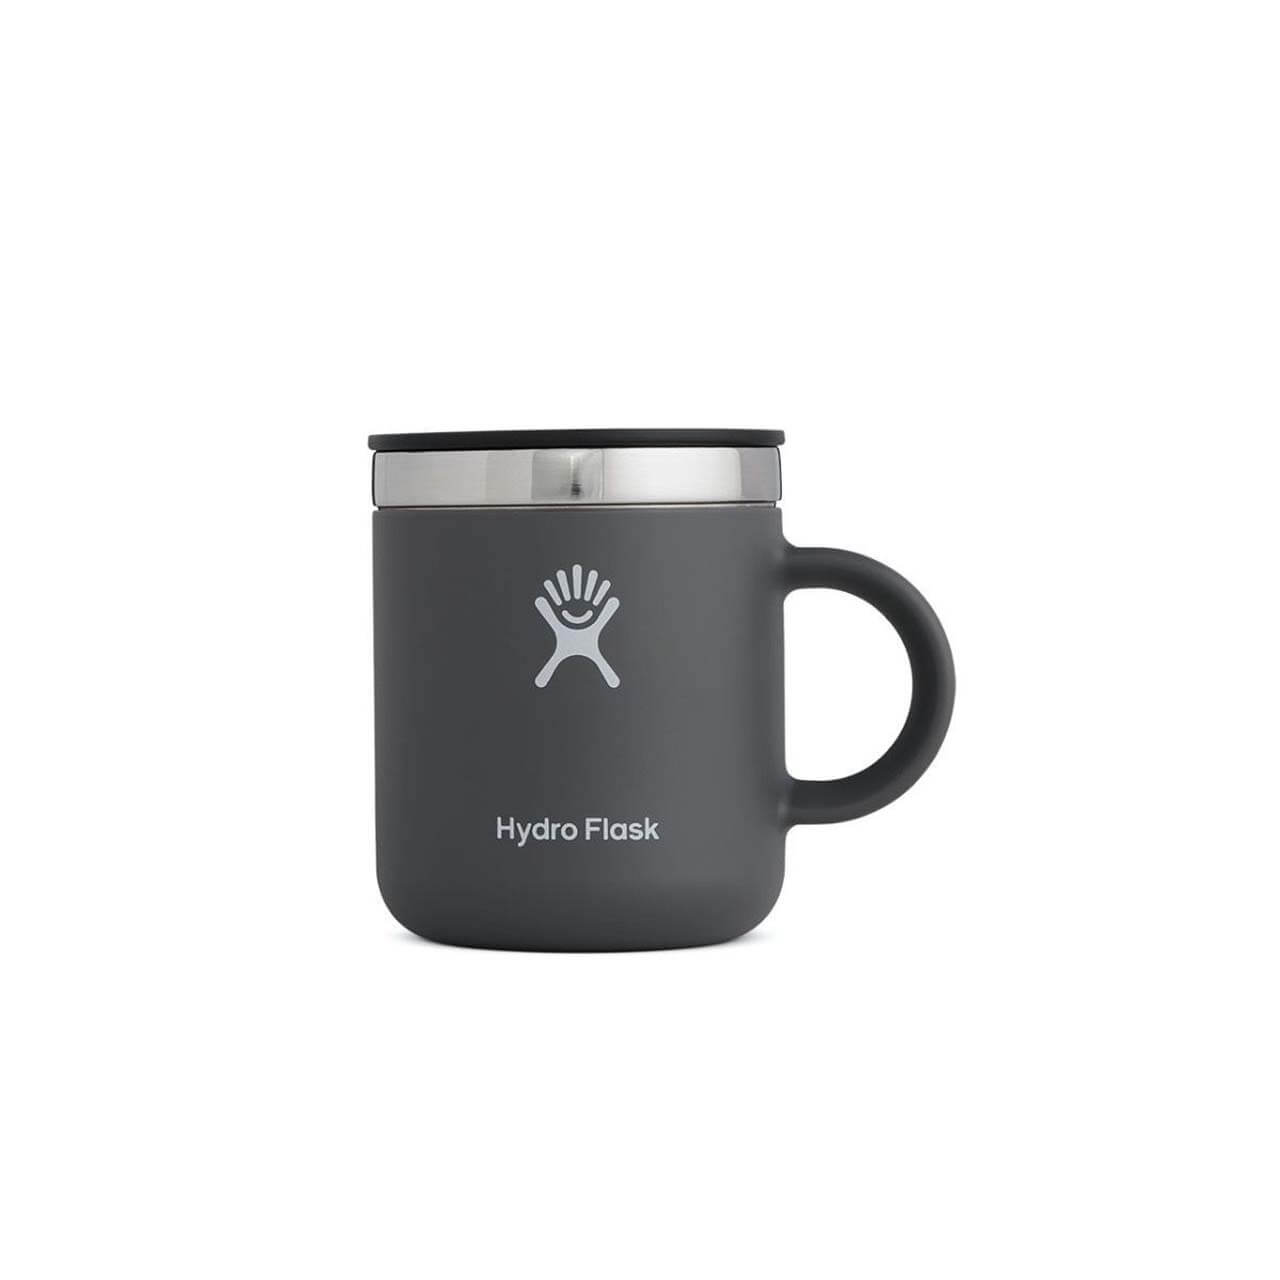 Hydro Flask Coffee Mug - Stone, 6 oz von Hydro Flask}